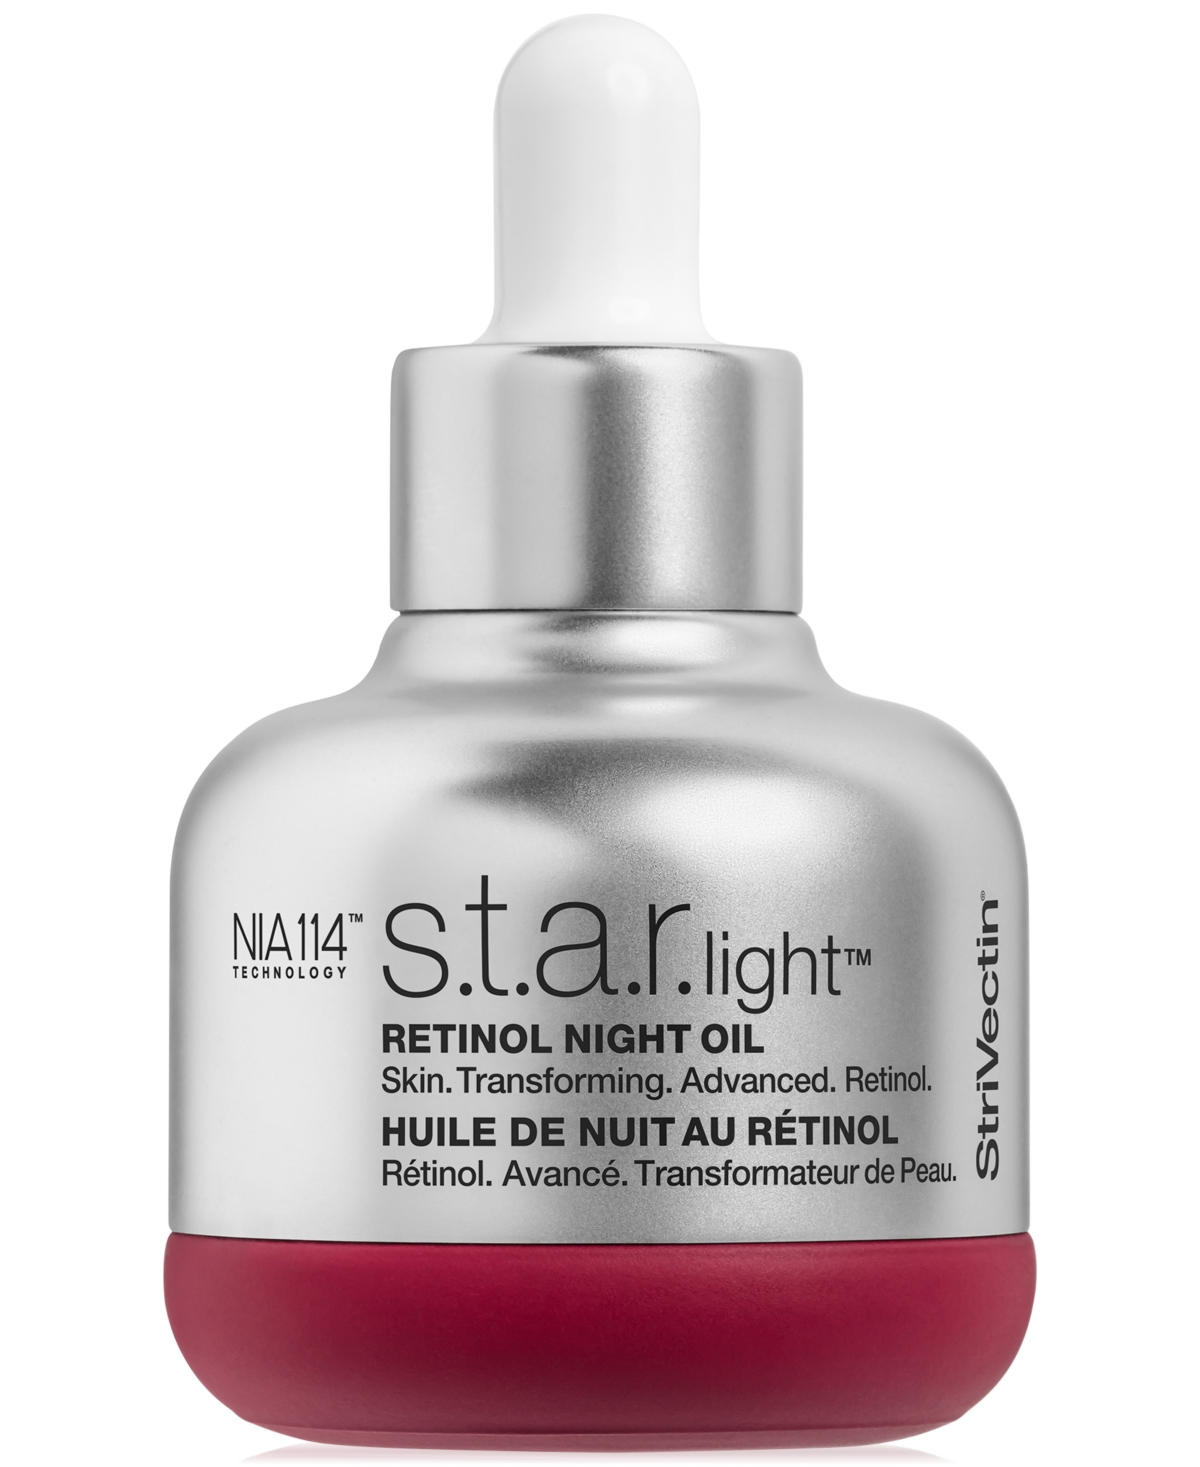 S.t.a.r. Light Retinol Night Oil, 1-oz.